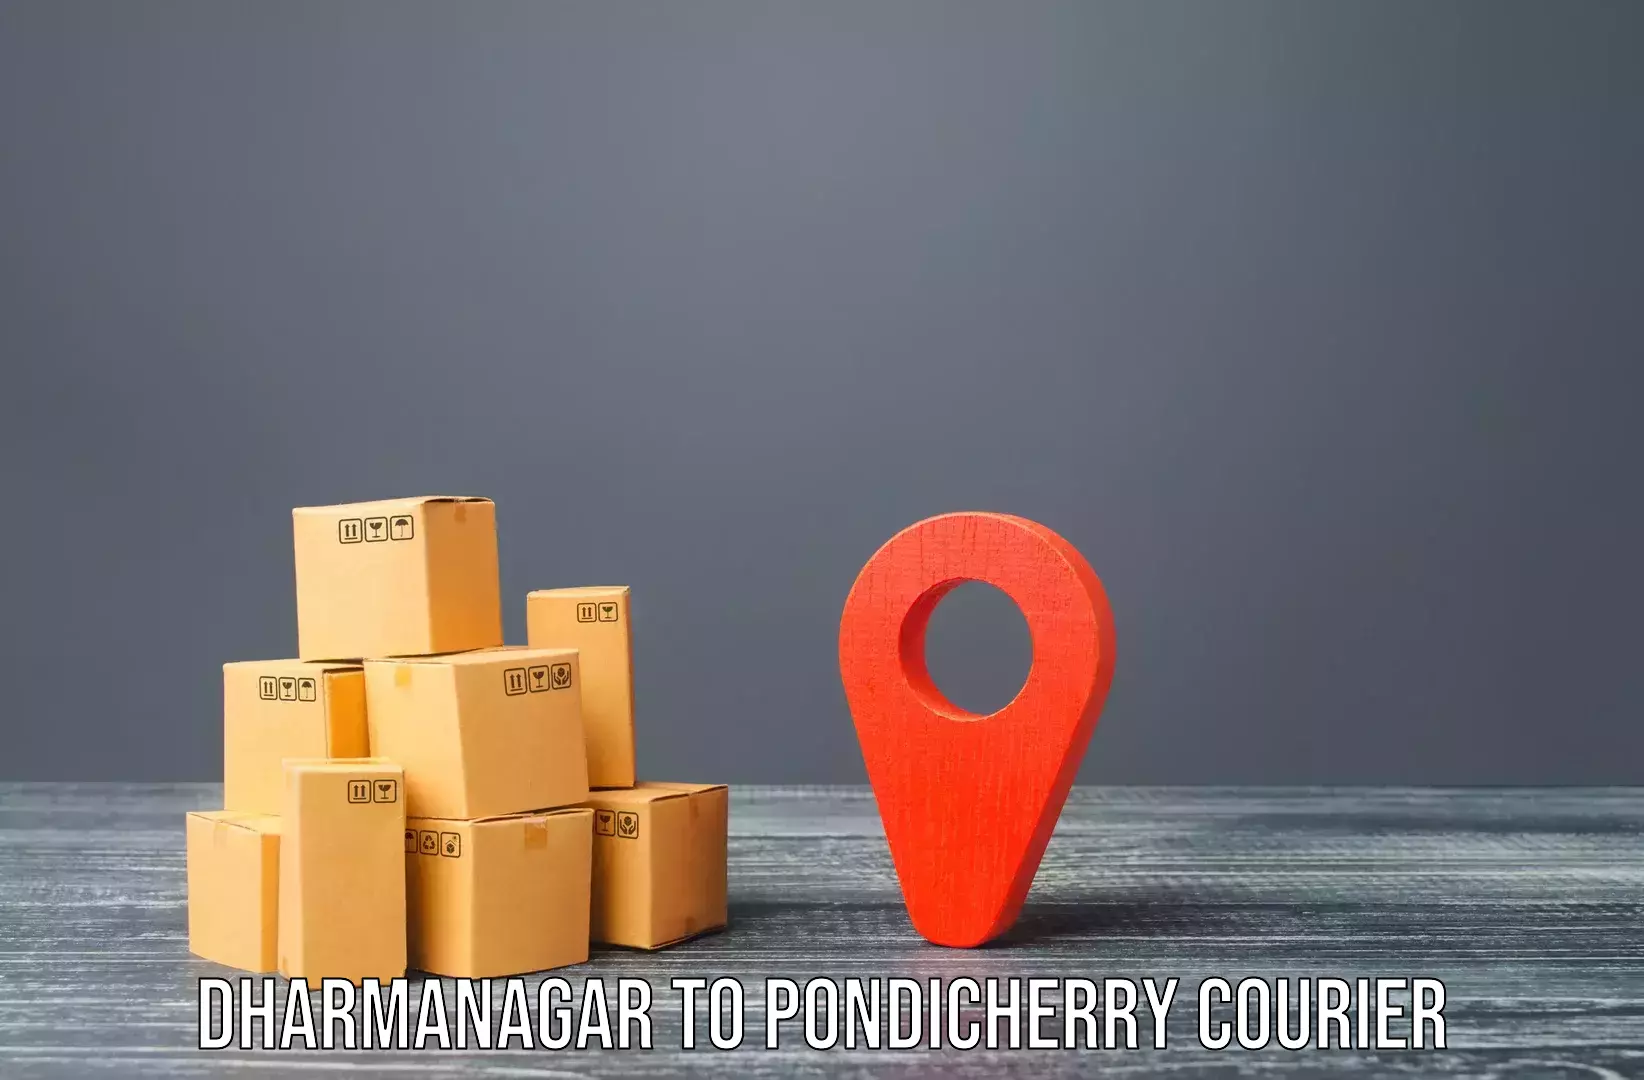 Furniture transport service Dharmanagar to Pondicherry